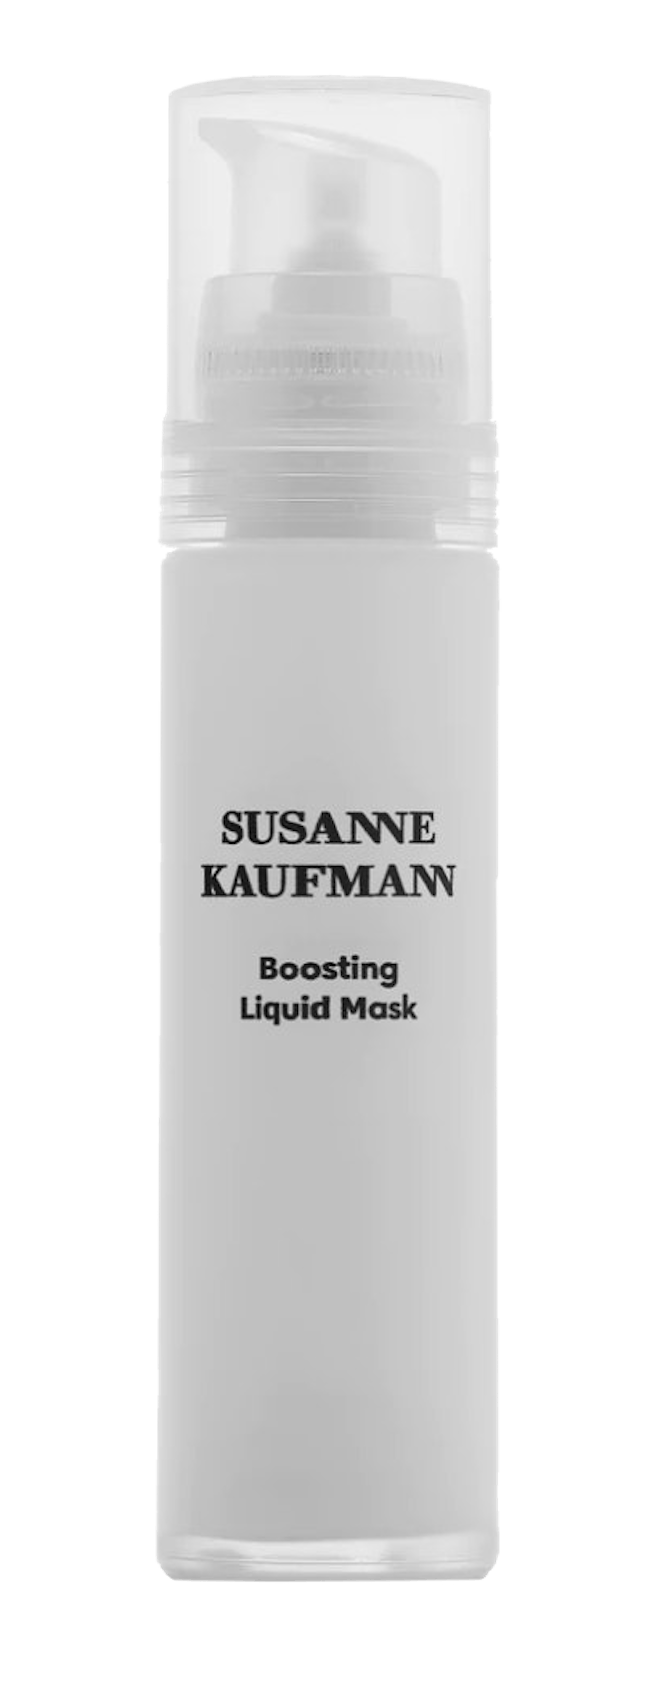 Boosting Liquid Mask